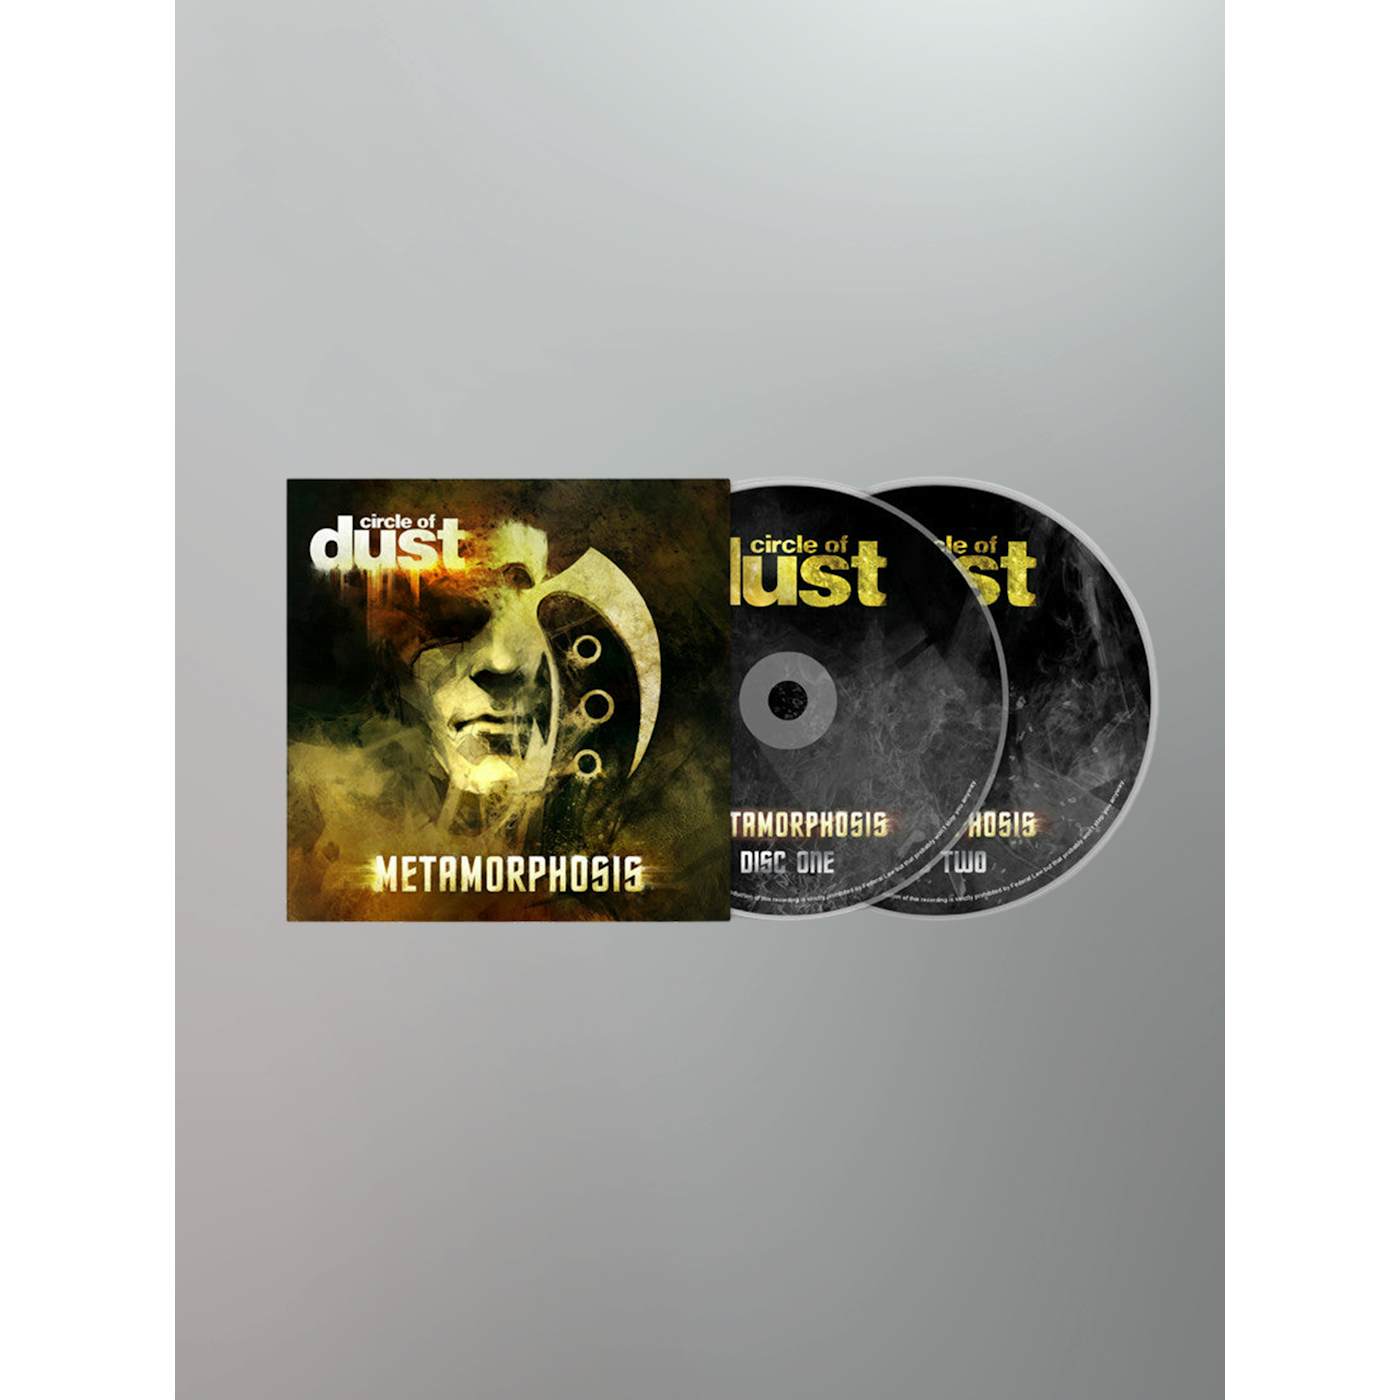 Circle of Dust - Metamorphosis (Remastered) CD